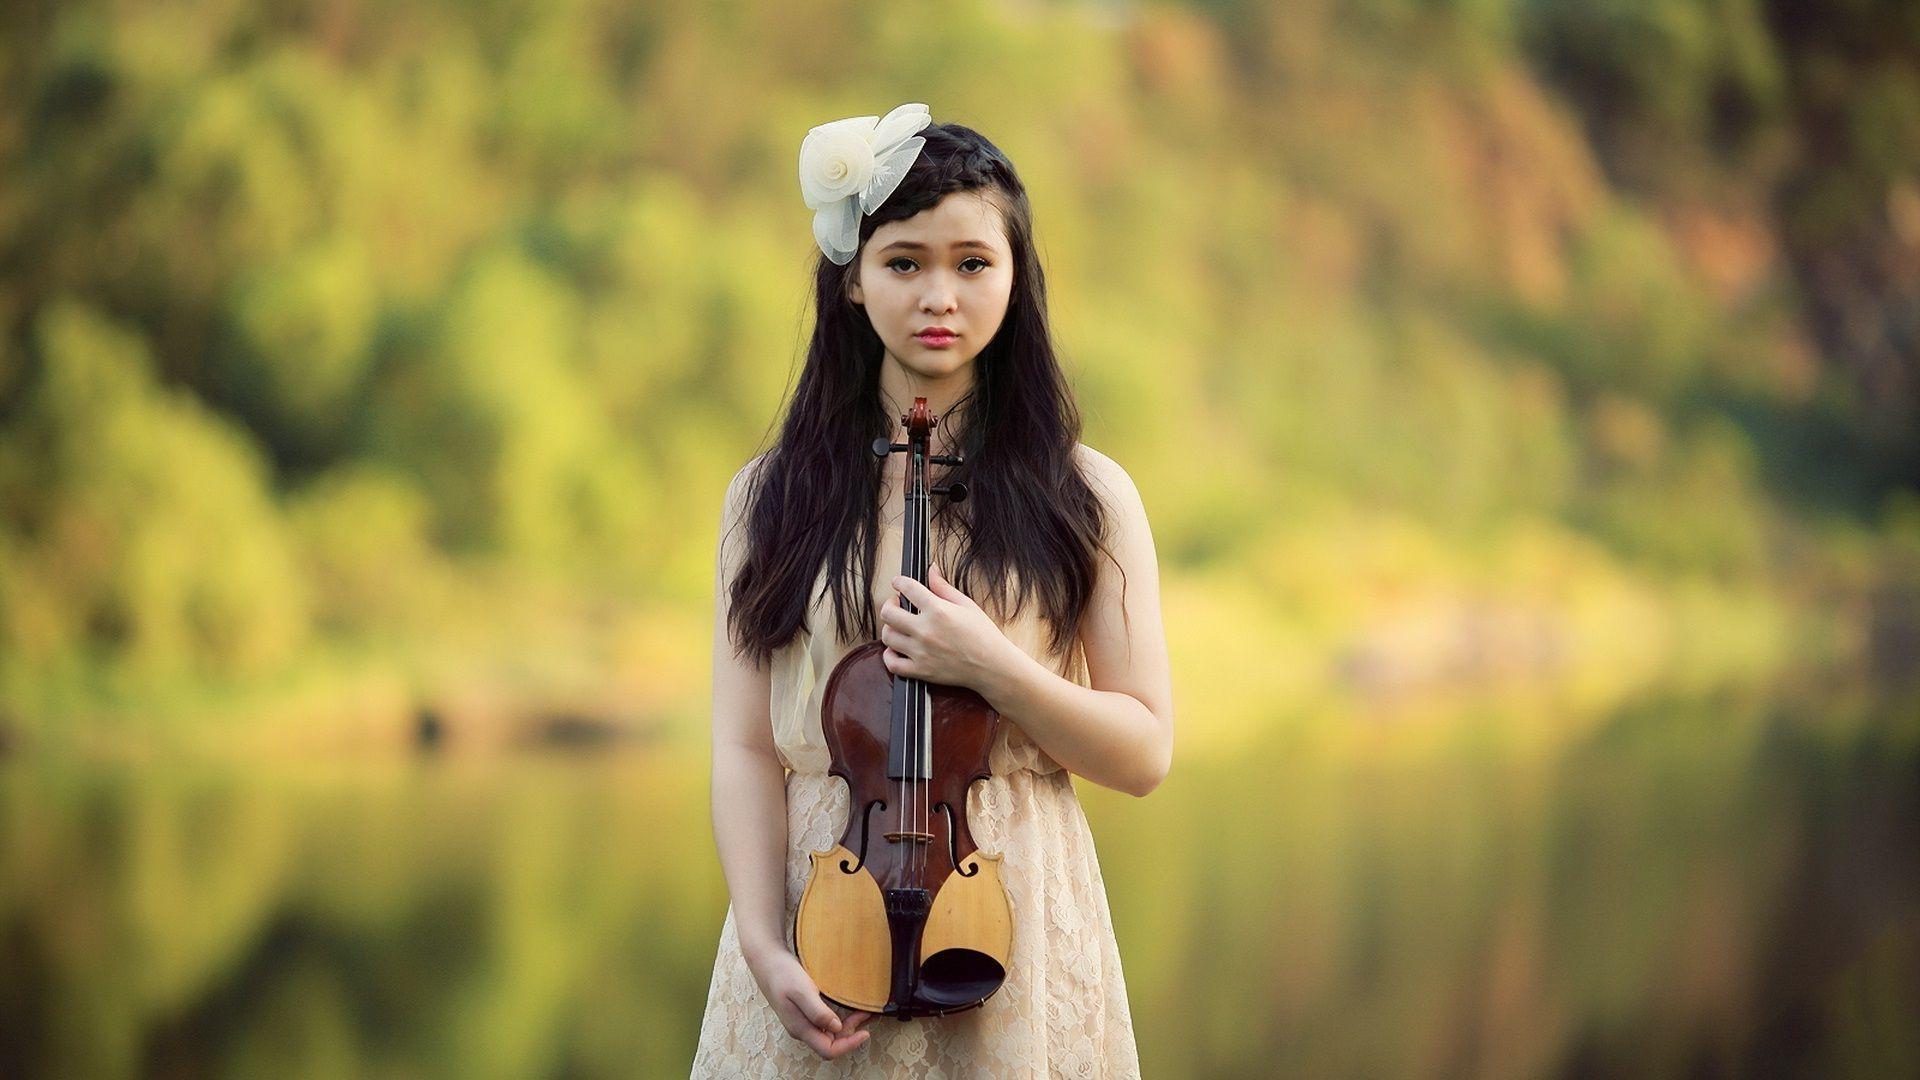 Woman holding a violin HD desktop wallpaper, Widescreen, High